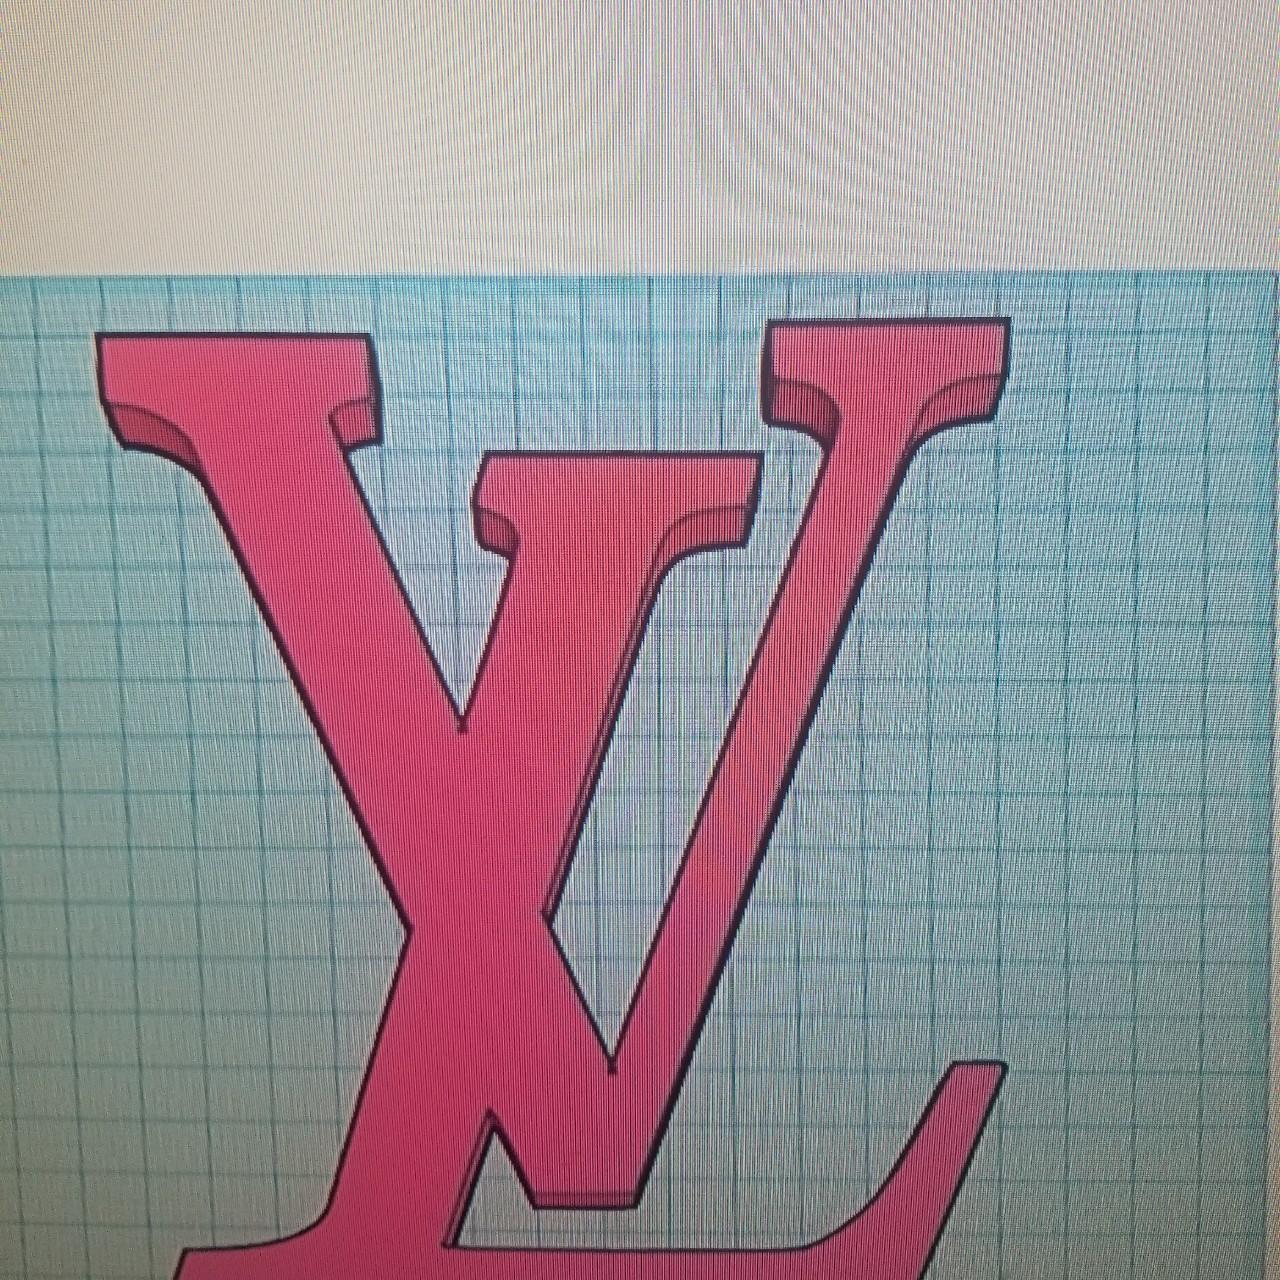 Louis Vuitton logo embroidery design